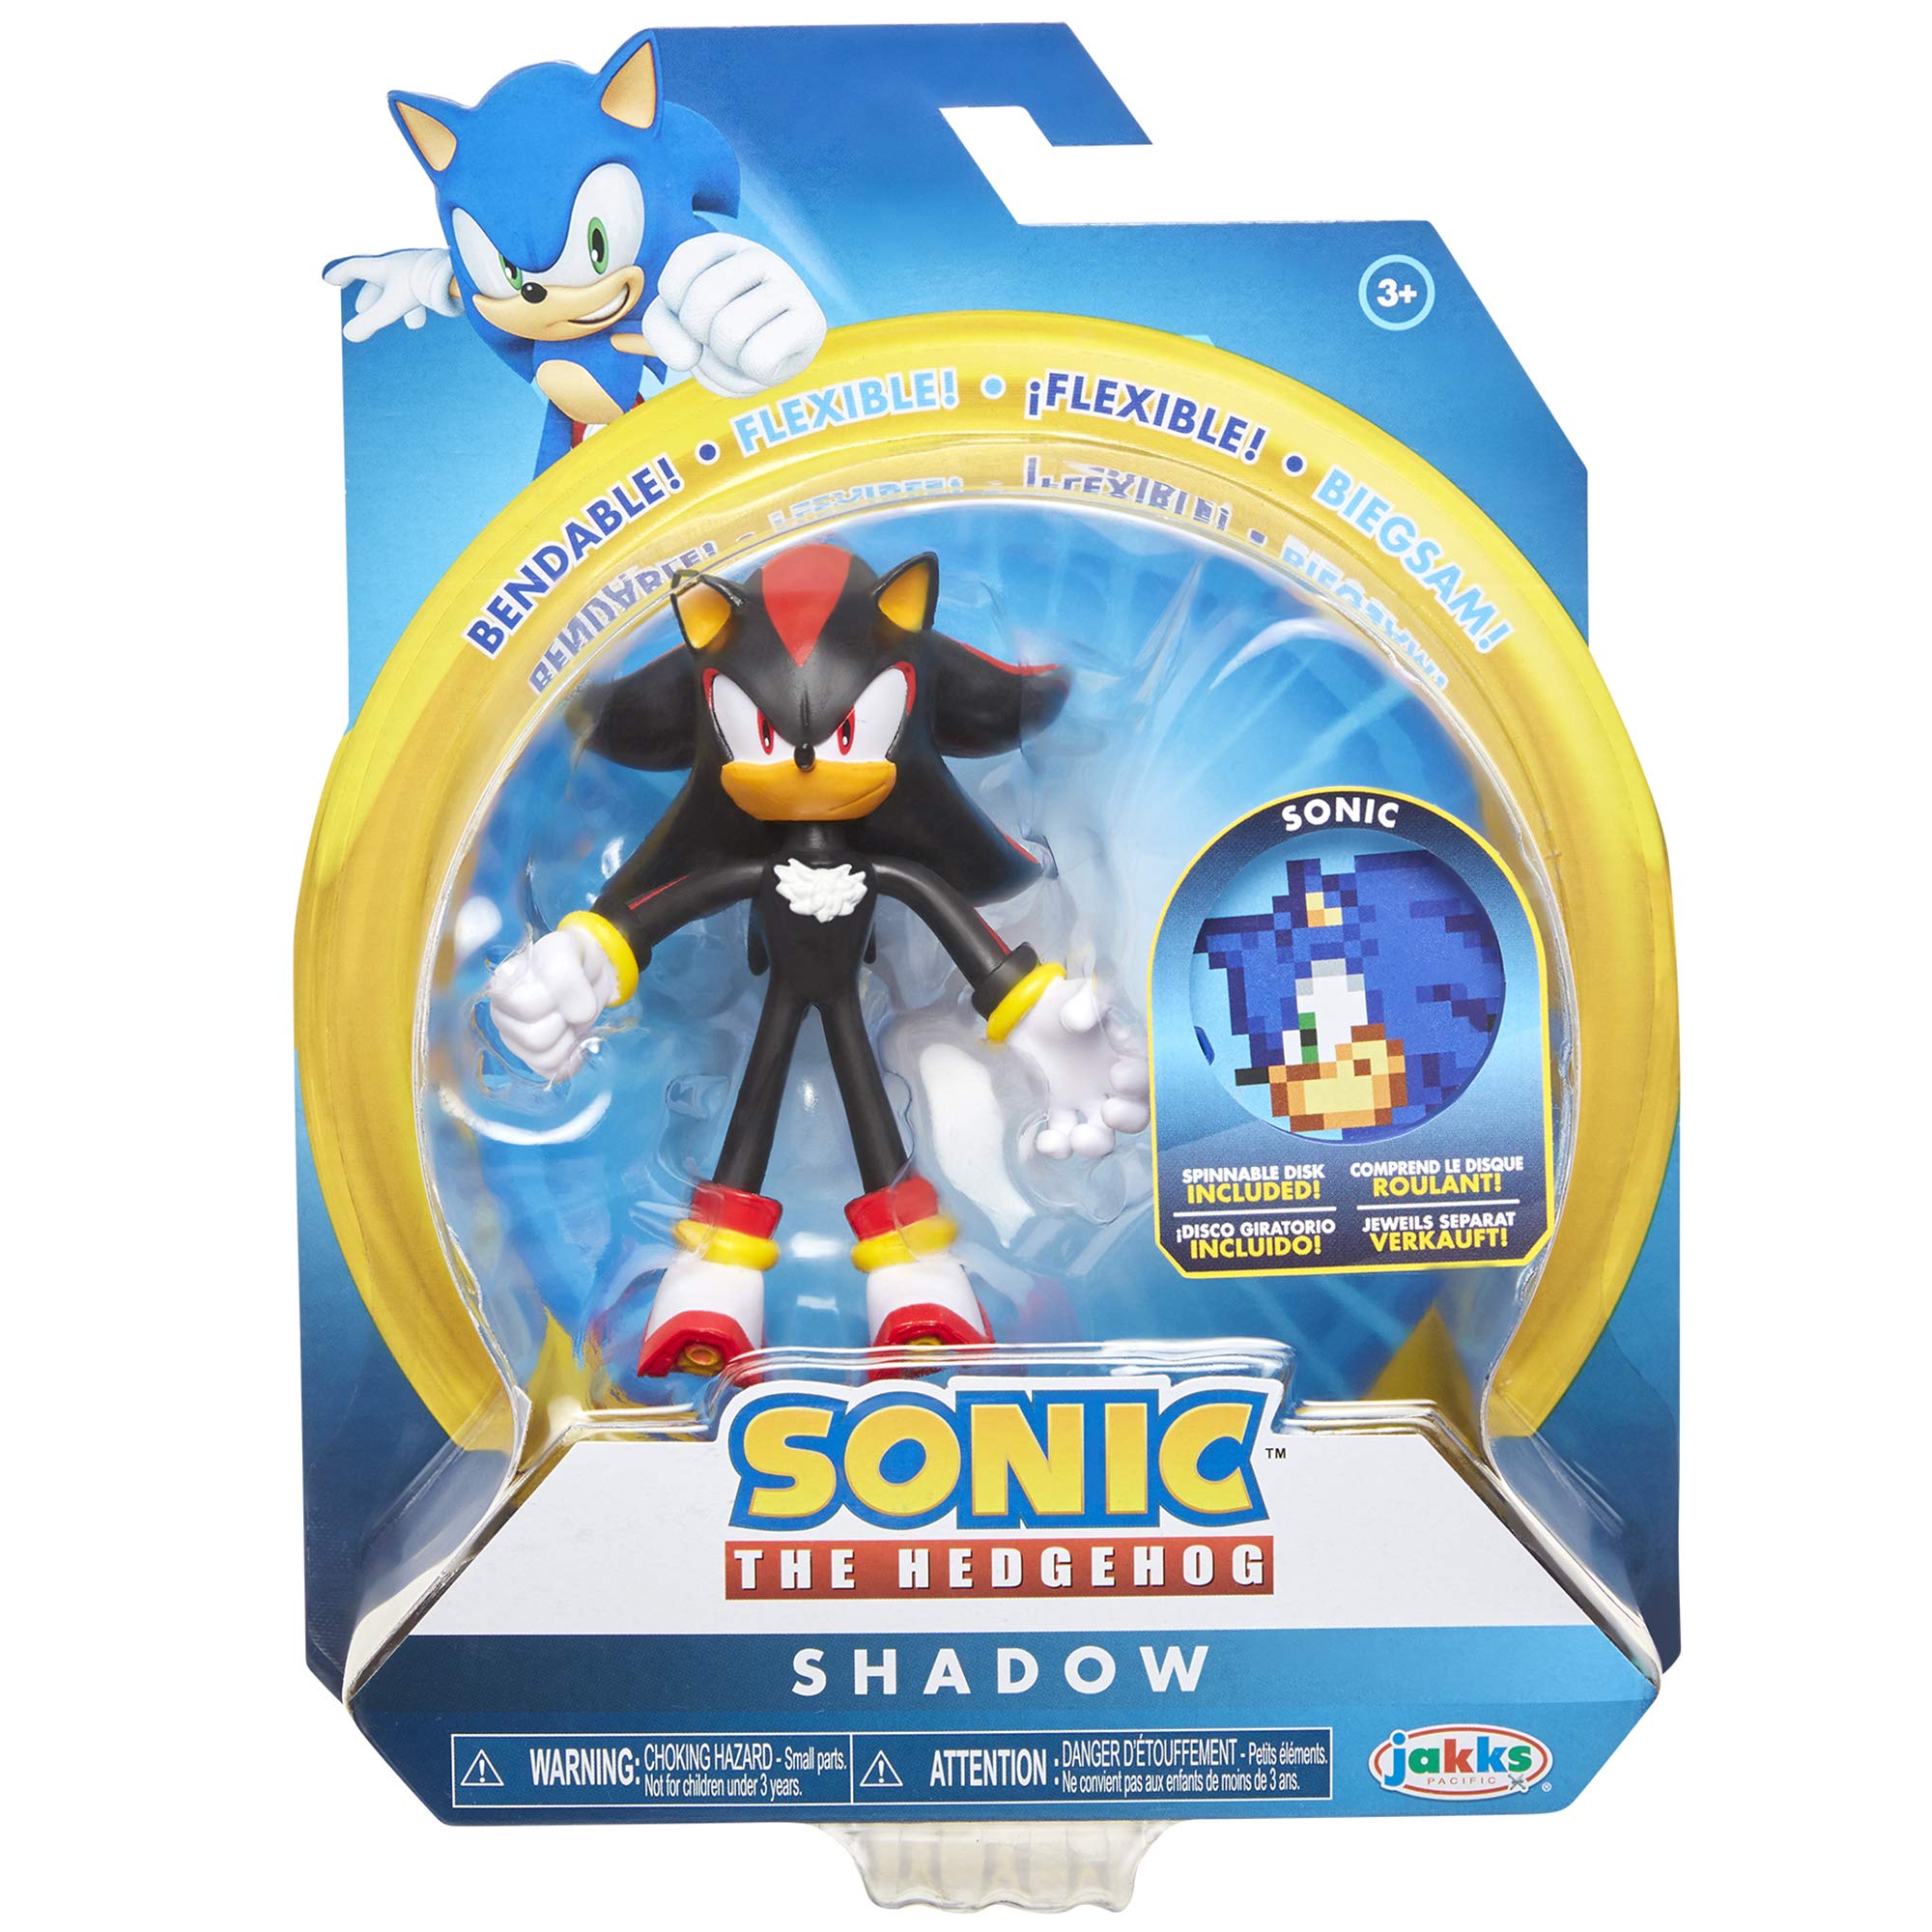 Sonic The Hedgehog Đồ Chơi Xếp Hình Lắp Ráp Mô Hình Trí Tuệ Hoạt Hình Sonic  Bộ Mới Nhất cho bé WM6088  BrickcoBrick